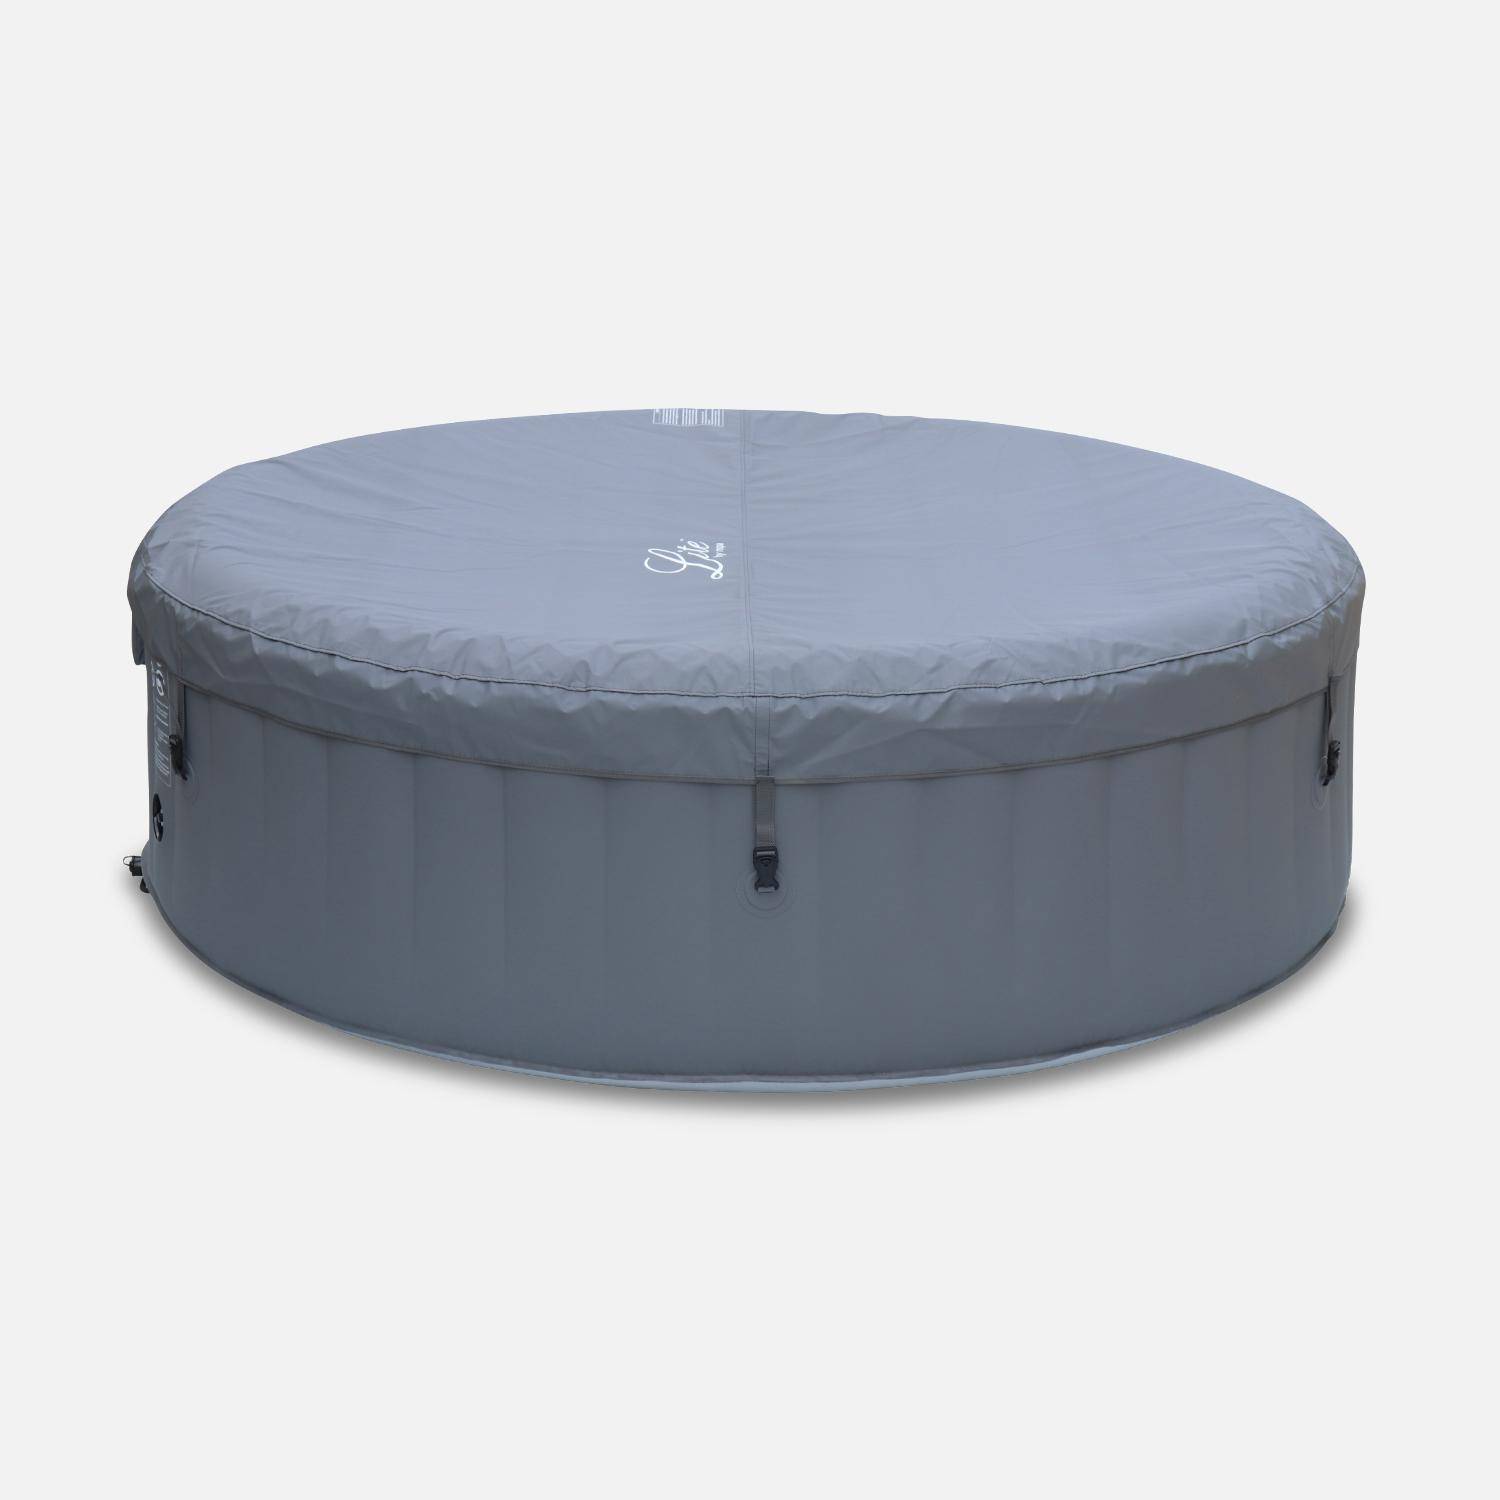 MSPA grijze ronde opblaasbare spa voor 6 personen met antivriessysteem + cover en frame van geweven hars,sweeek,Photo4